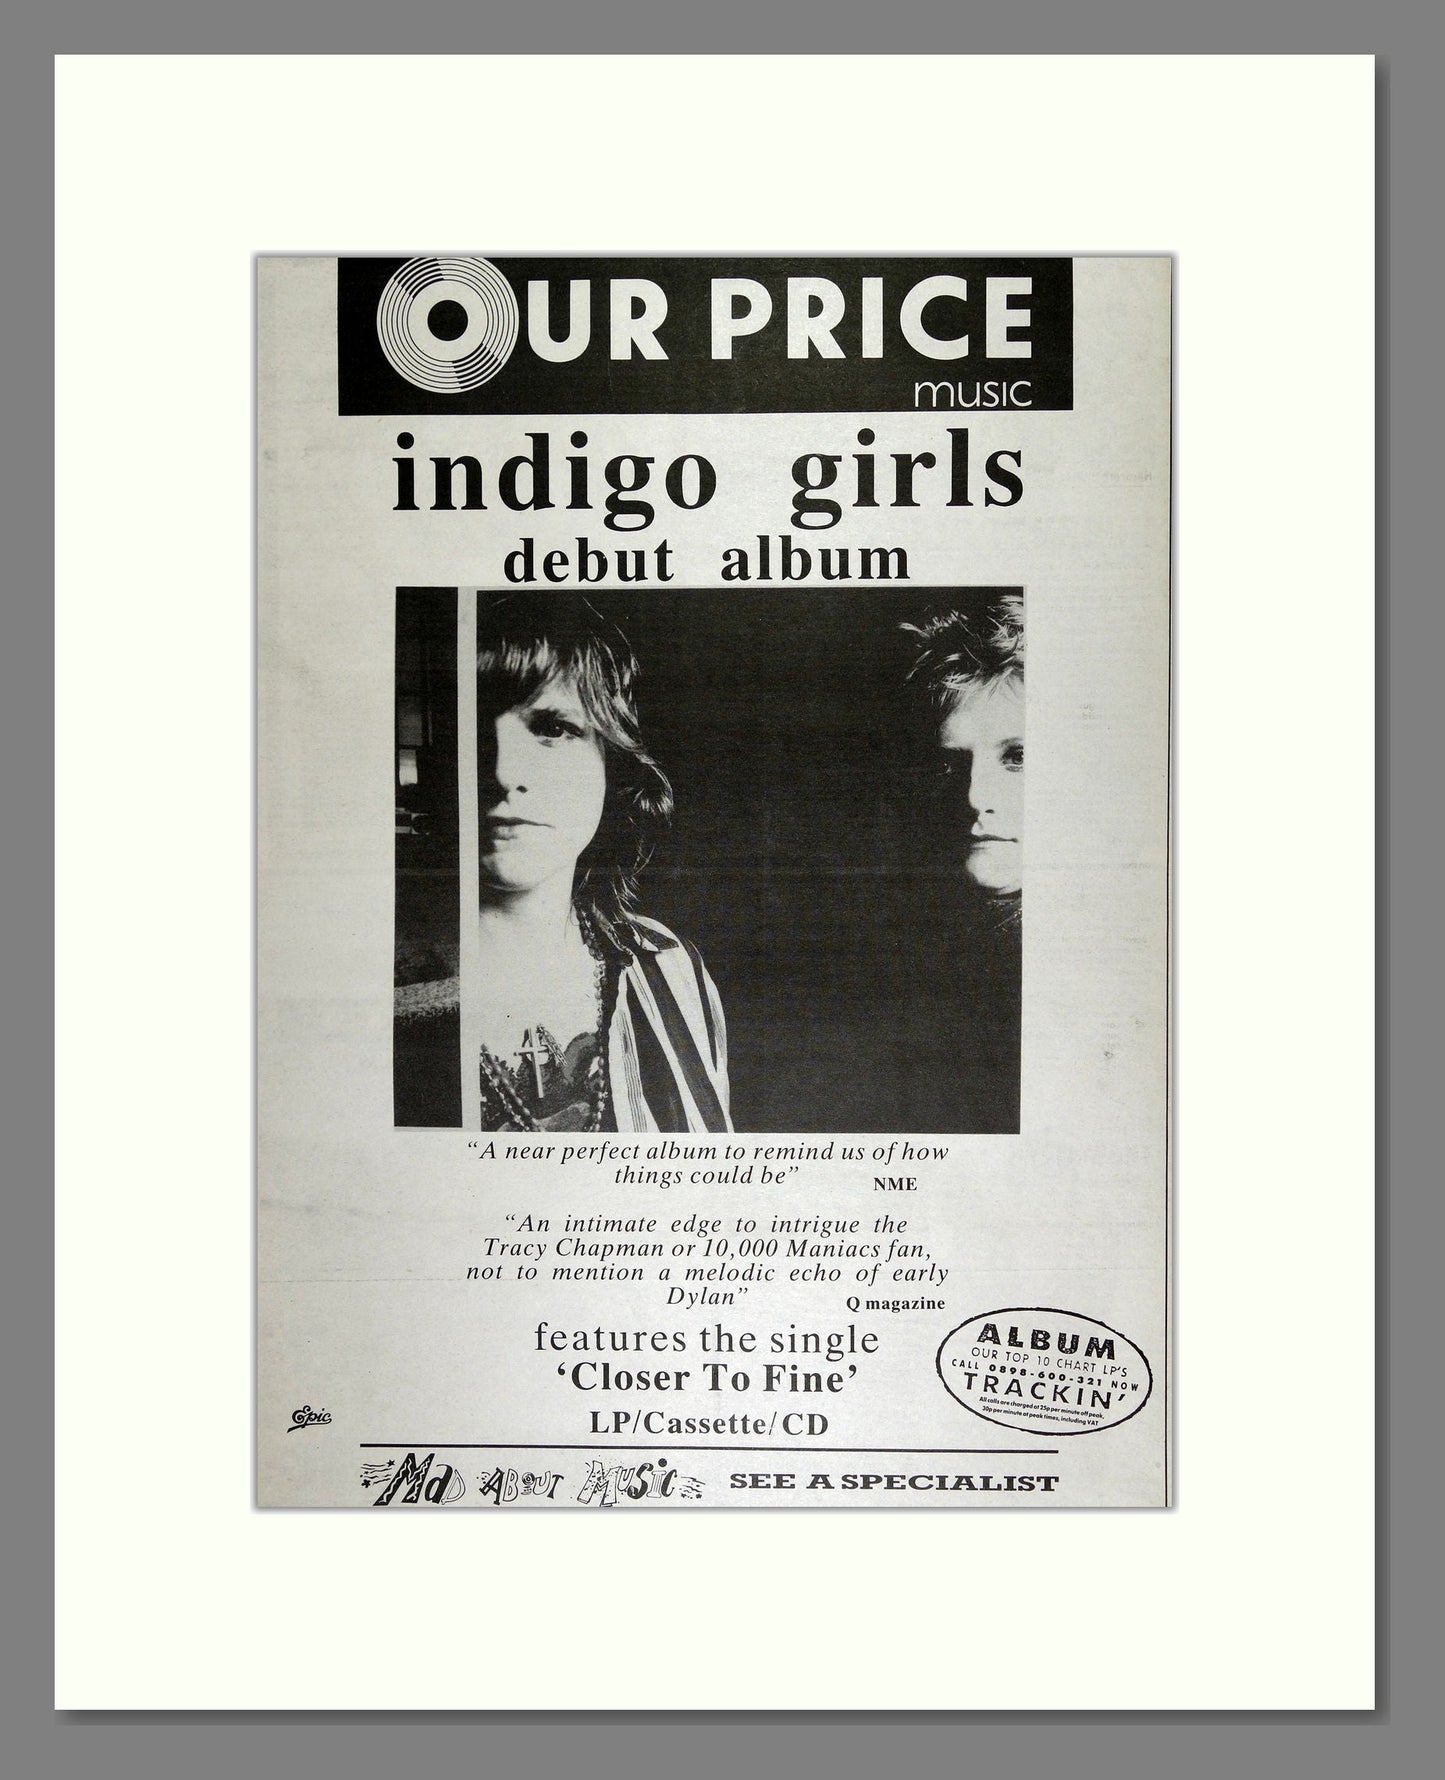 Indigo Girls - Debut Album. Vintage Advert 1989 (ref AD16448)